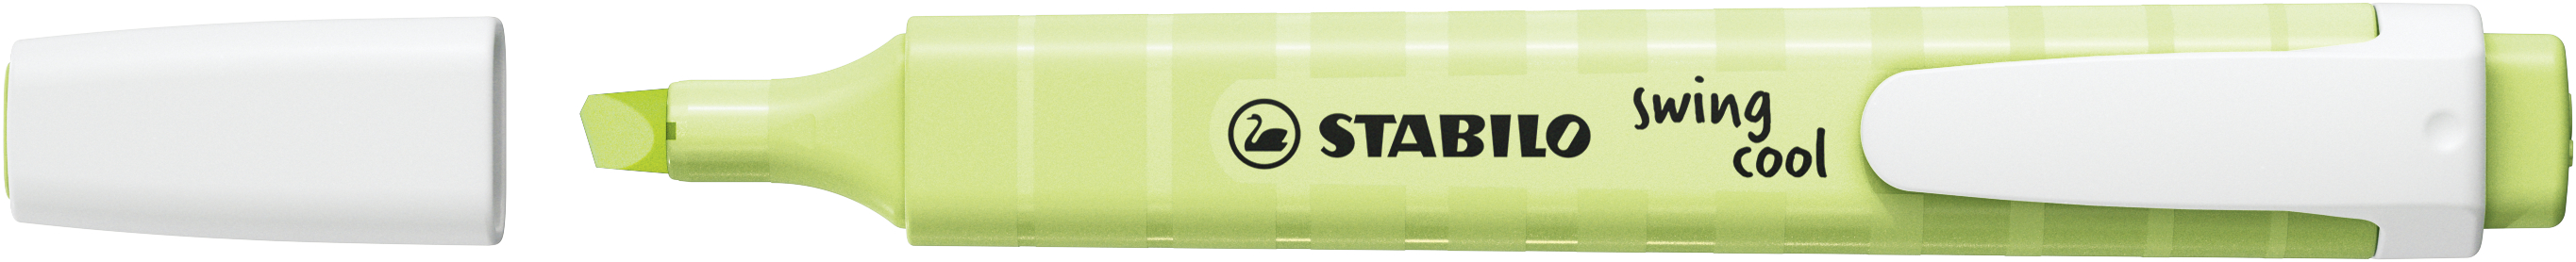 STABILO Textmarker Swing Cool 1-4mm 275/133-8 limette pastel